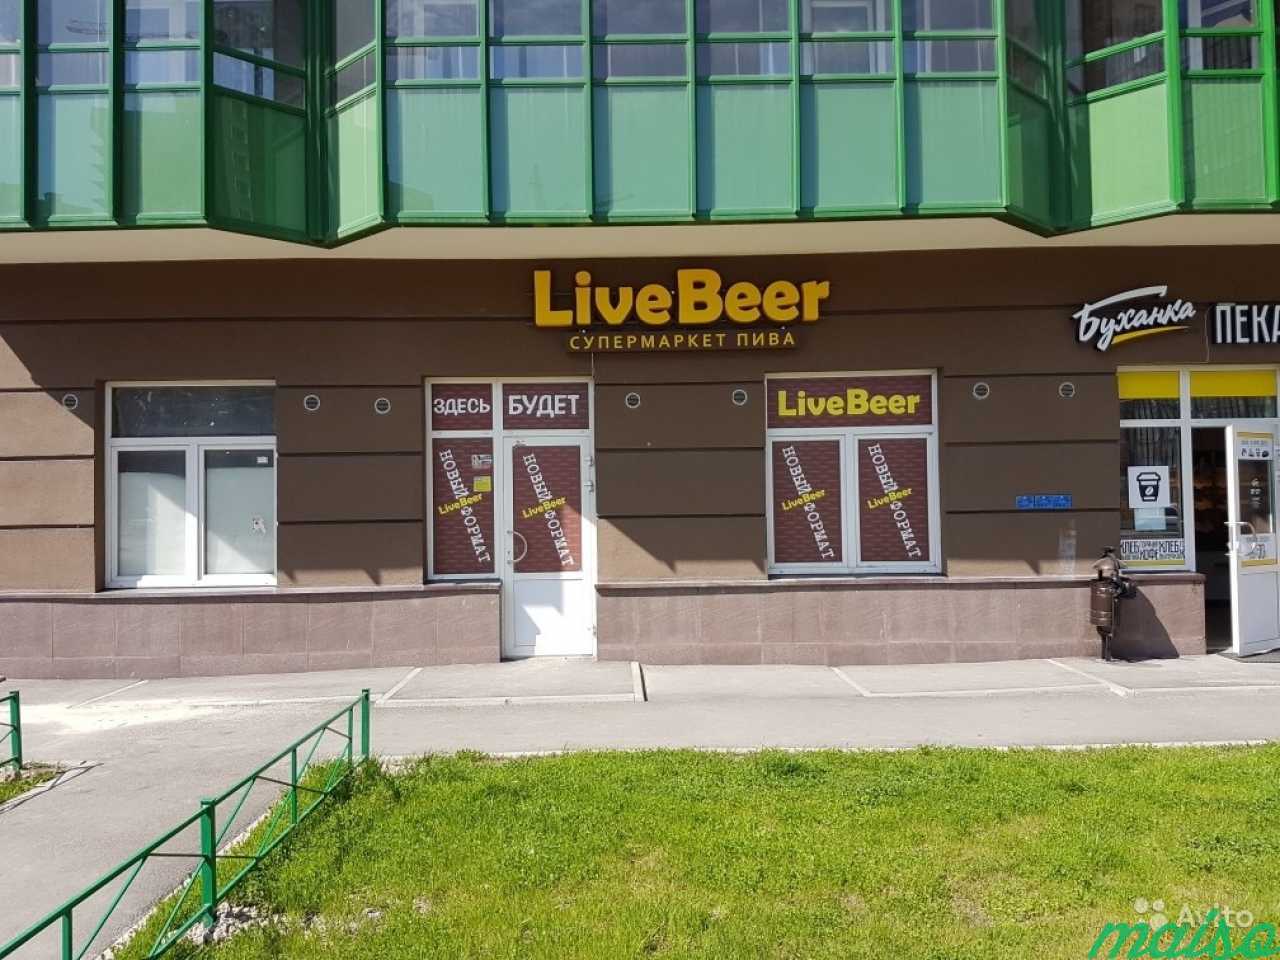 Live beer. Live Beer СПБ. LIVEBEER карта. Ленинградское шоссе вывеска.